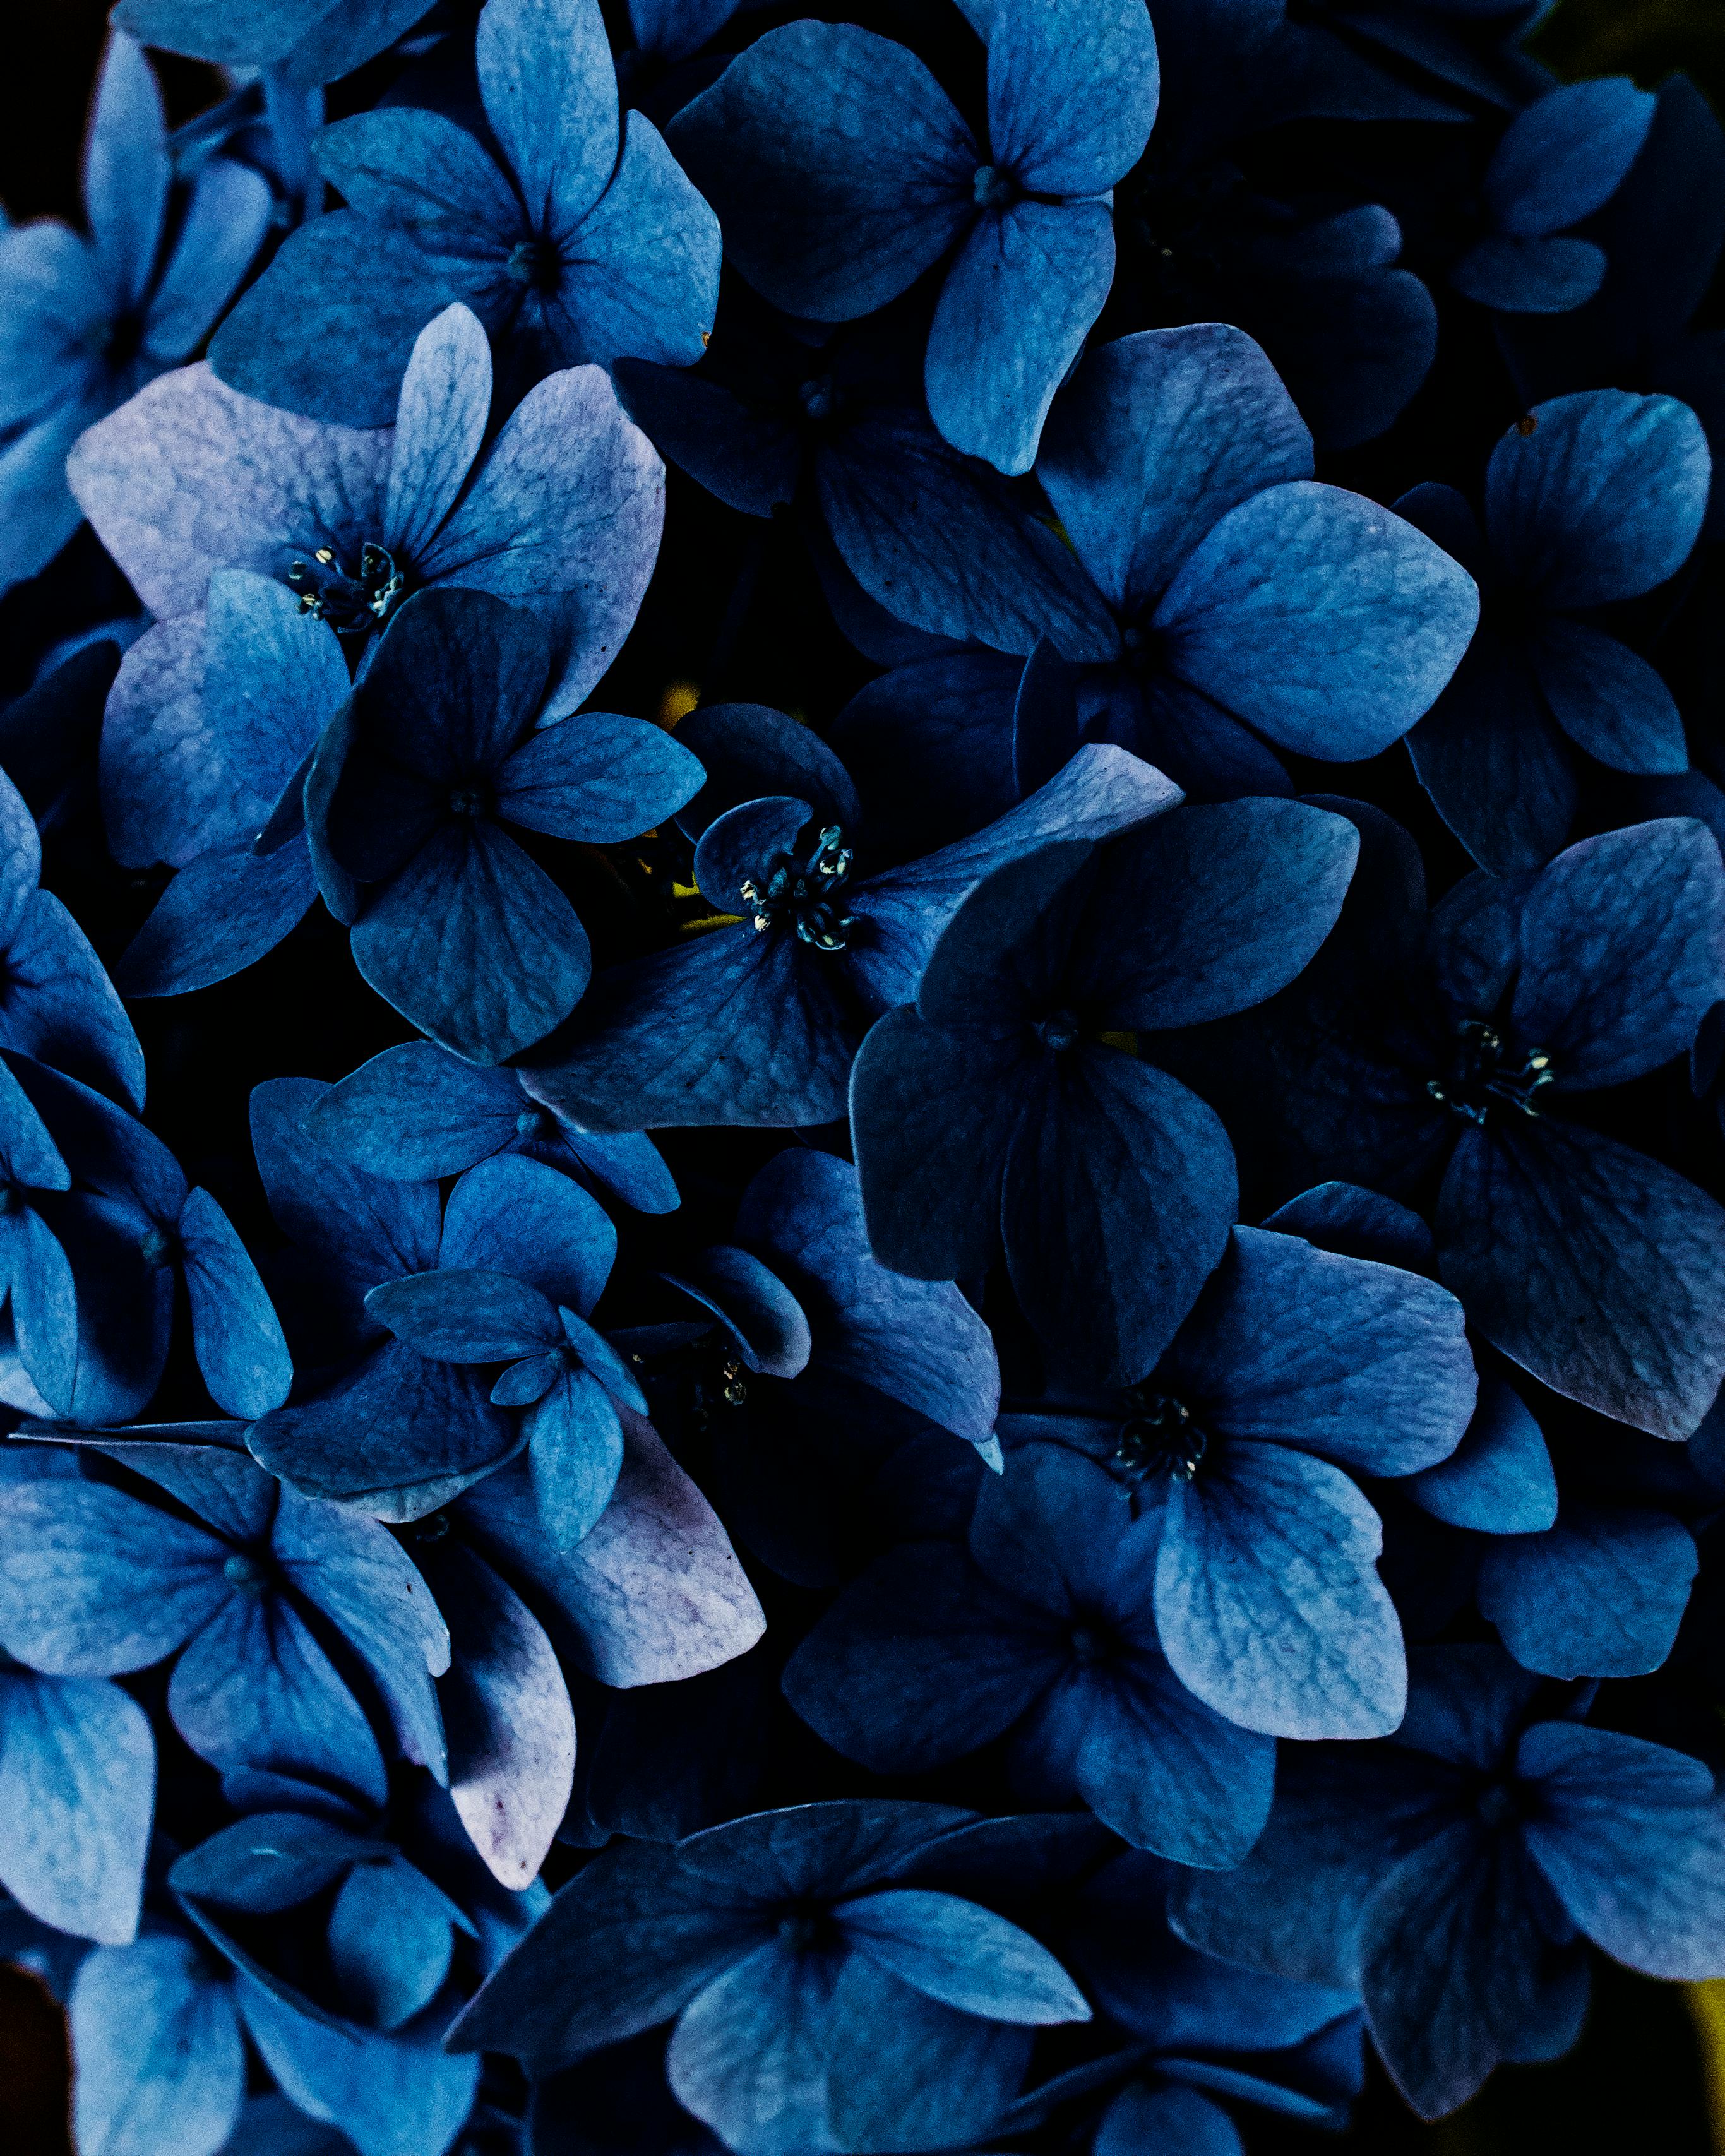 blue Cute blue wallpaper Blue flower wallpaper Blue wallpapers Wallpaper  Download  MOONAZ